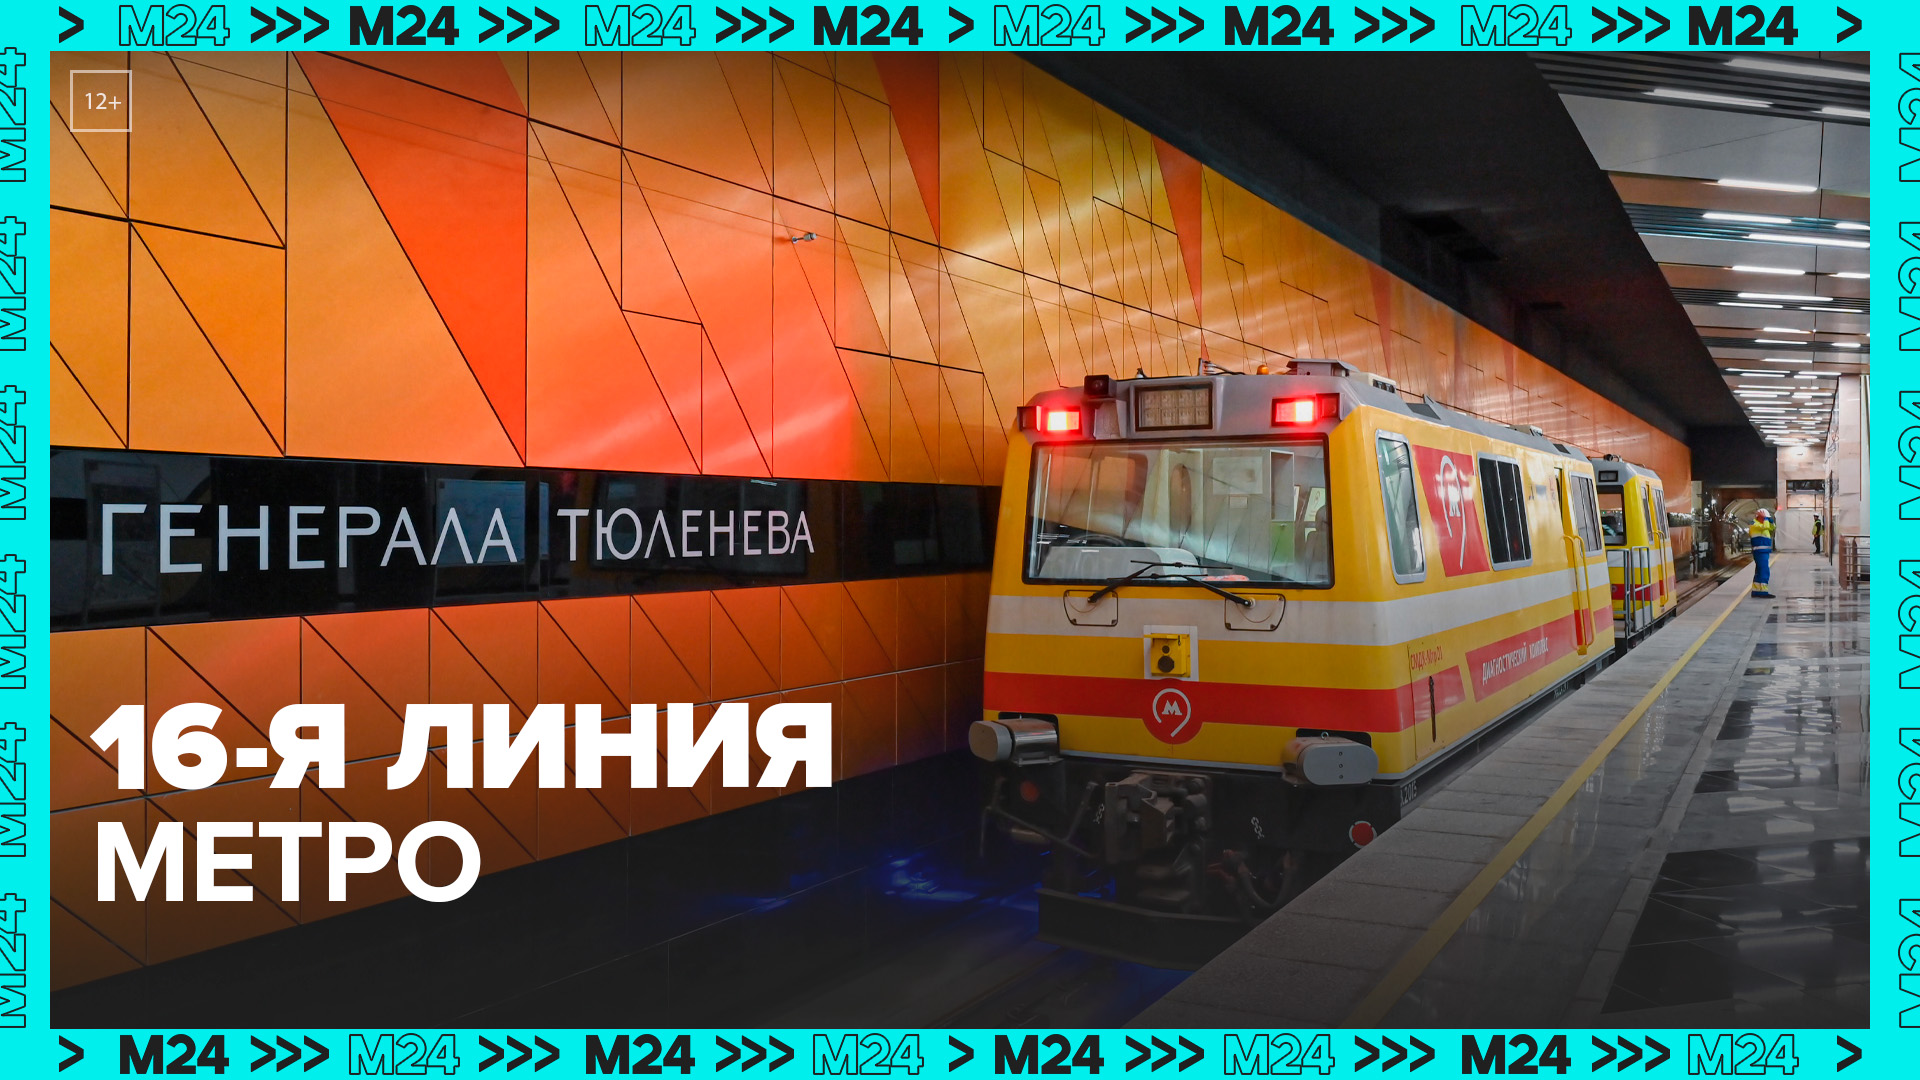 Метростроители провели технический пуск Троицкой линии метро — Москва 24